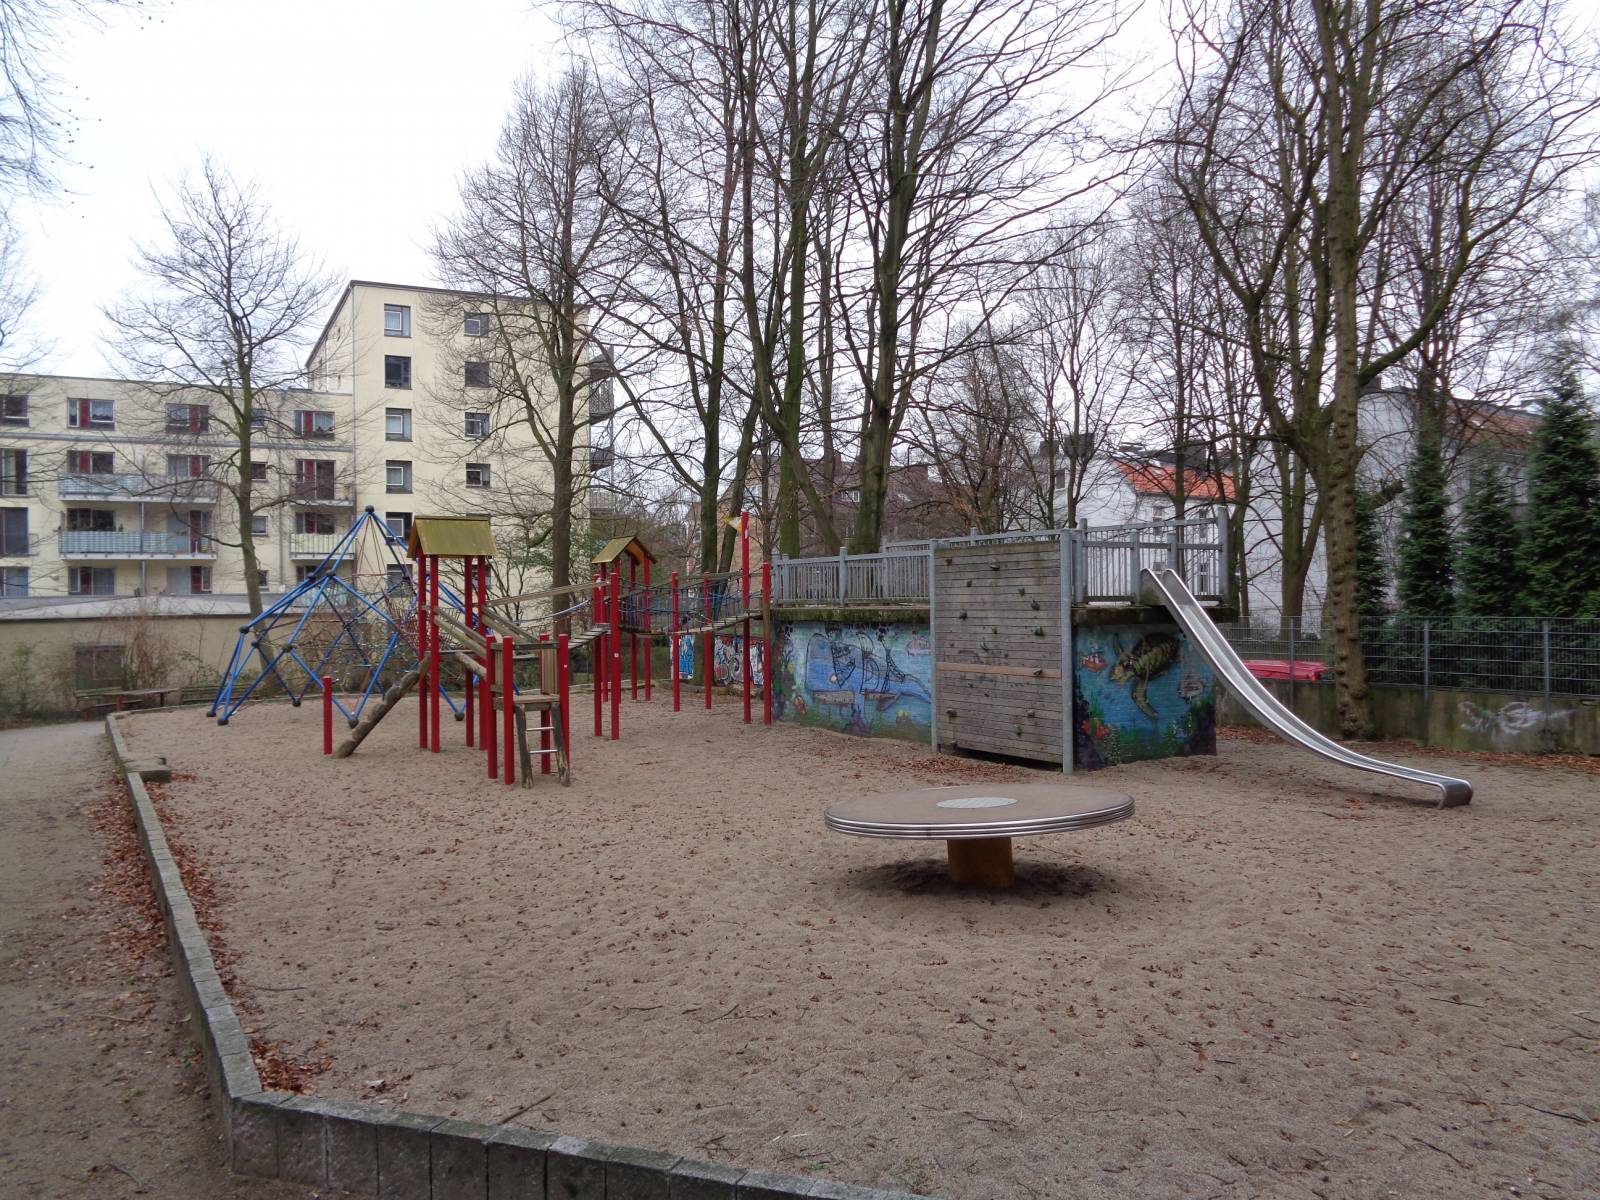 Spielplatz Bei St. Markus in Hamburg